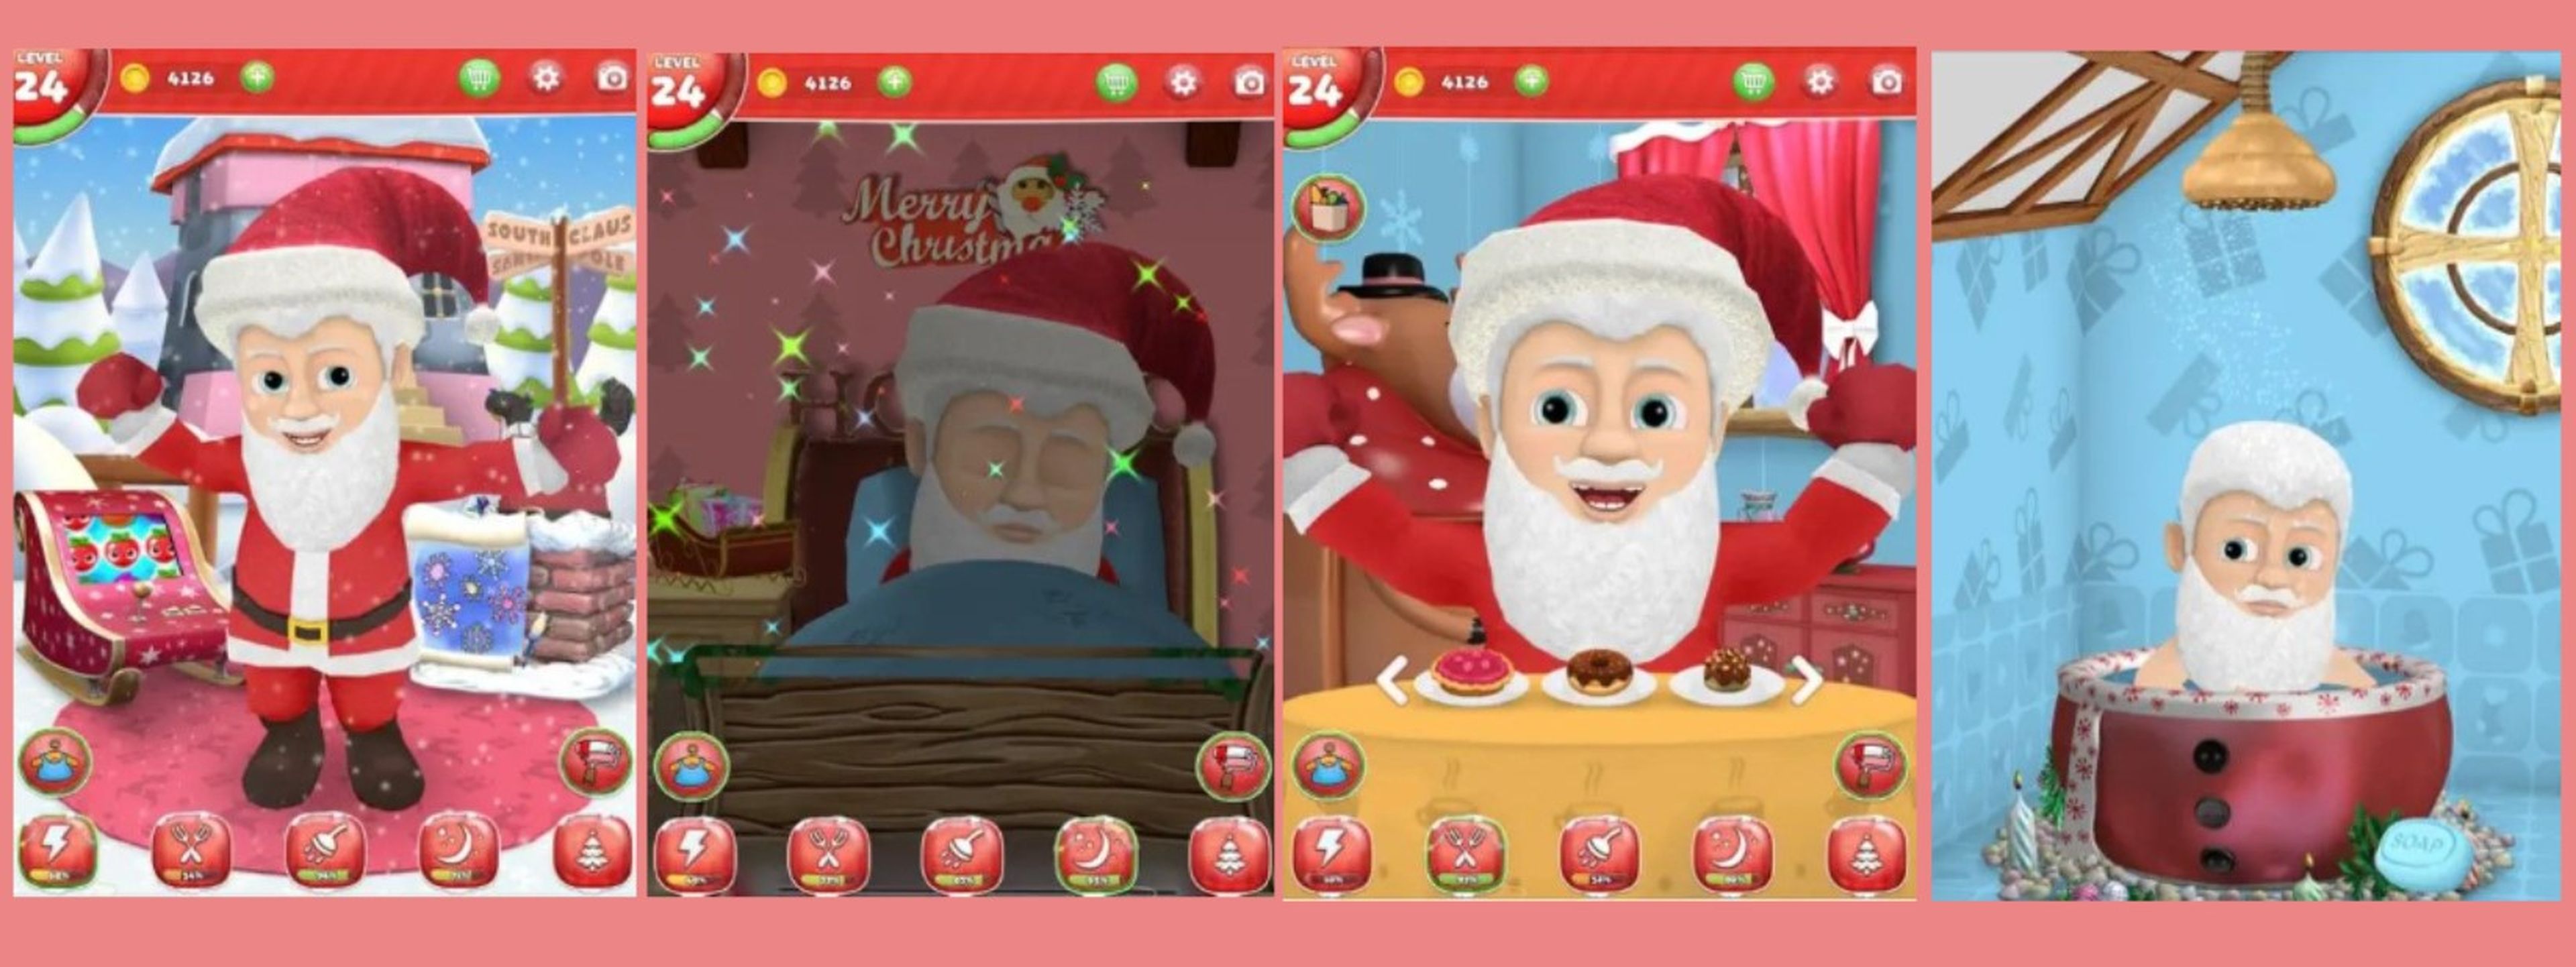 Apps y webs para crear manualidades navideñas para decorar y entretener a los niños